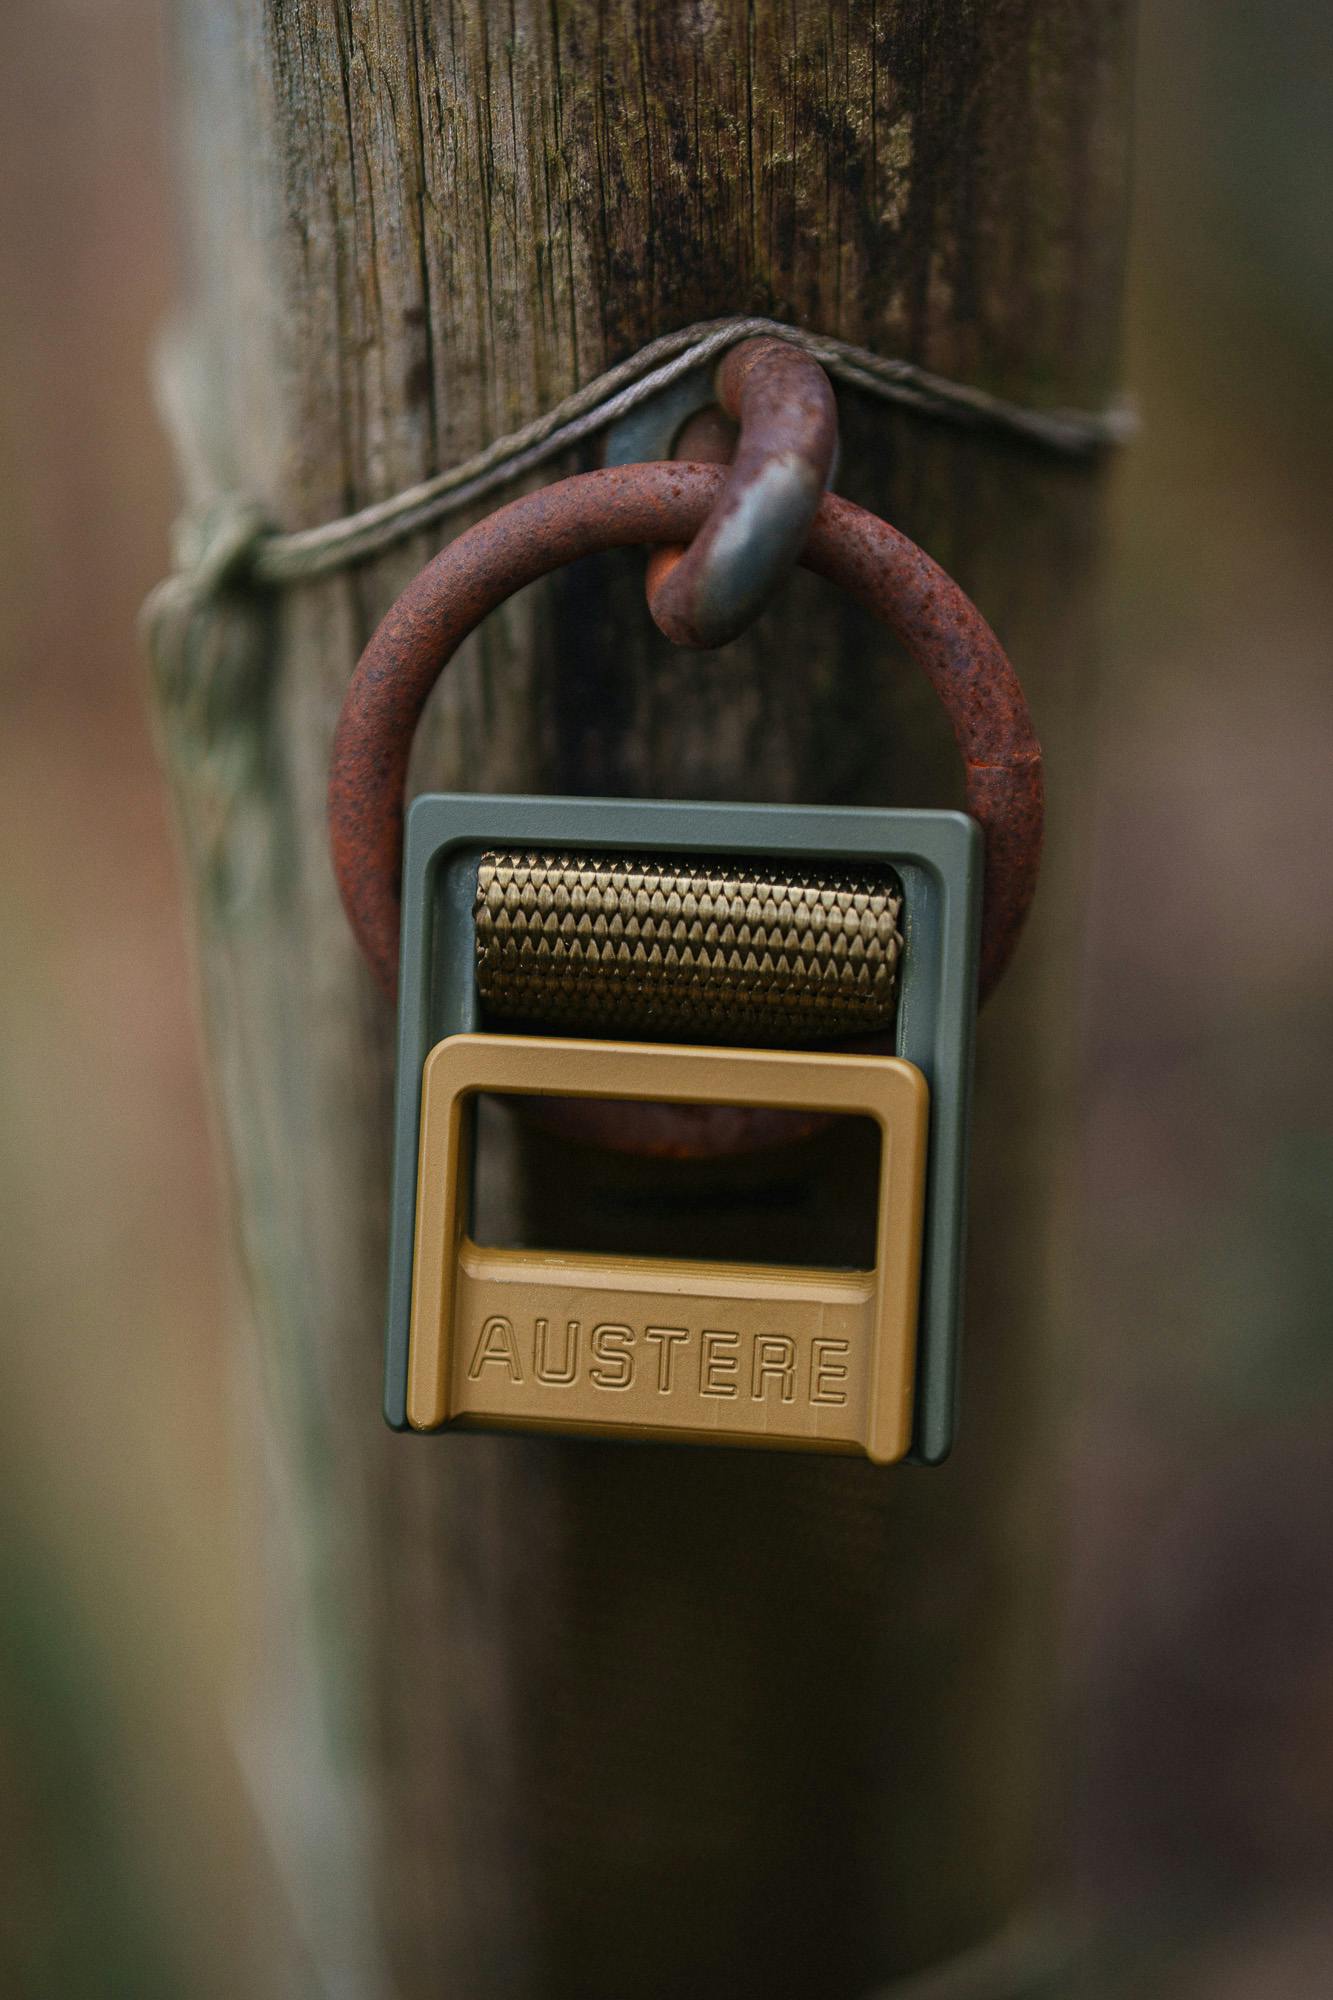 An Austere lock mechanism close up.